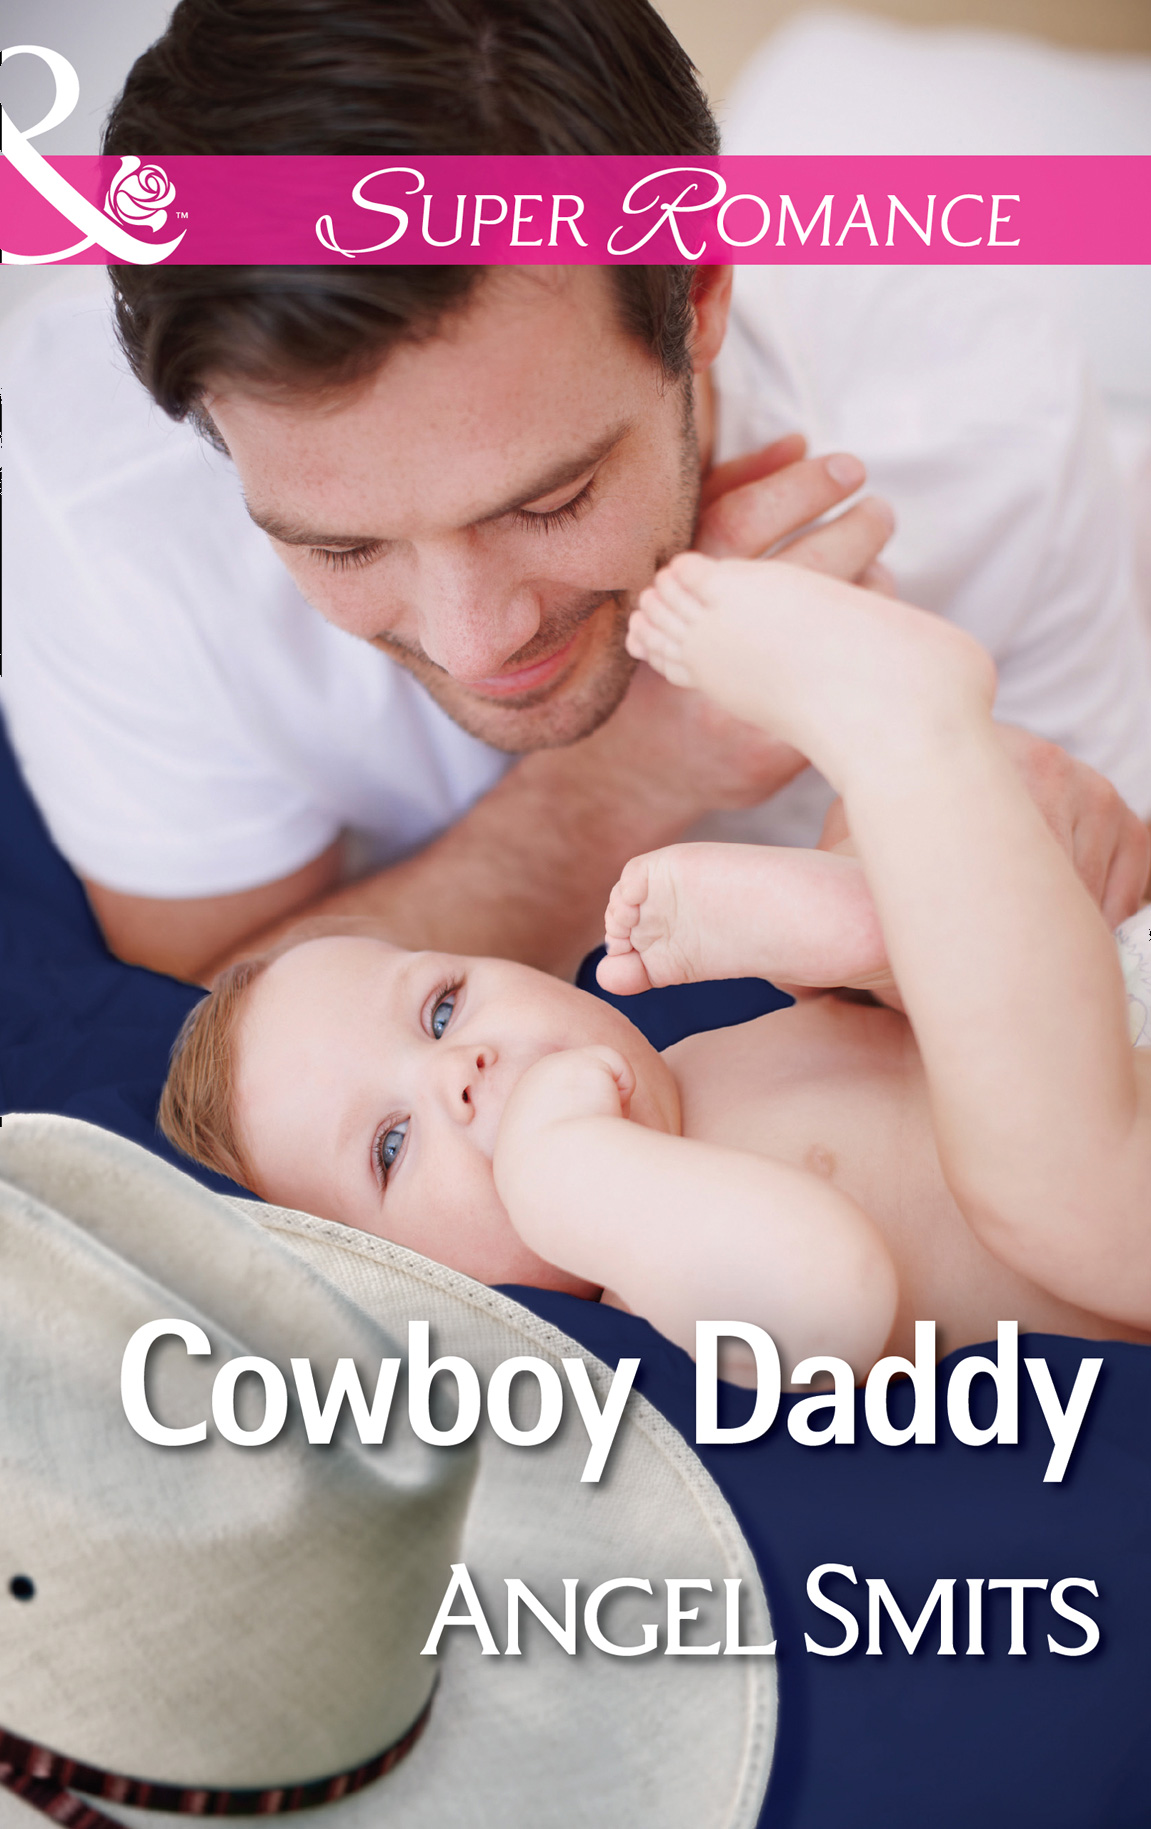 Daddy Cowboy. Daddy will Angell.